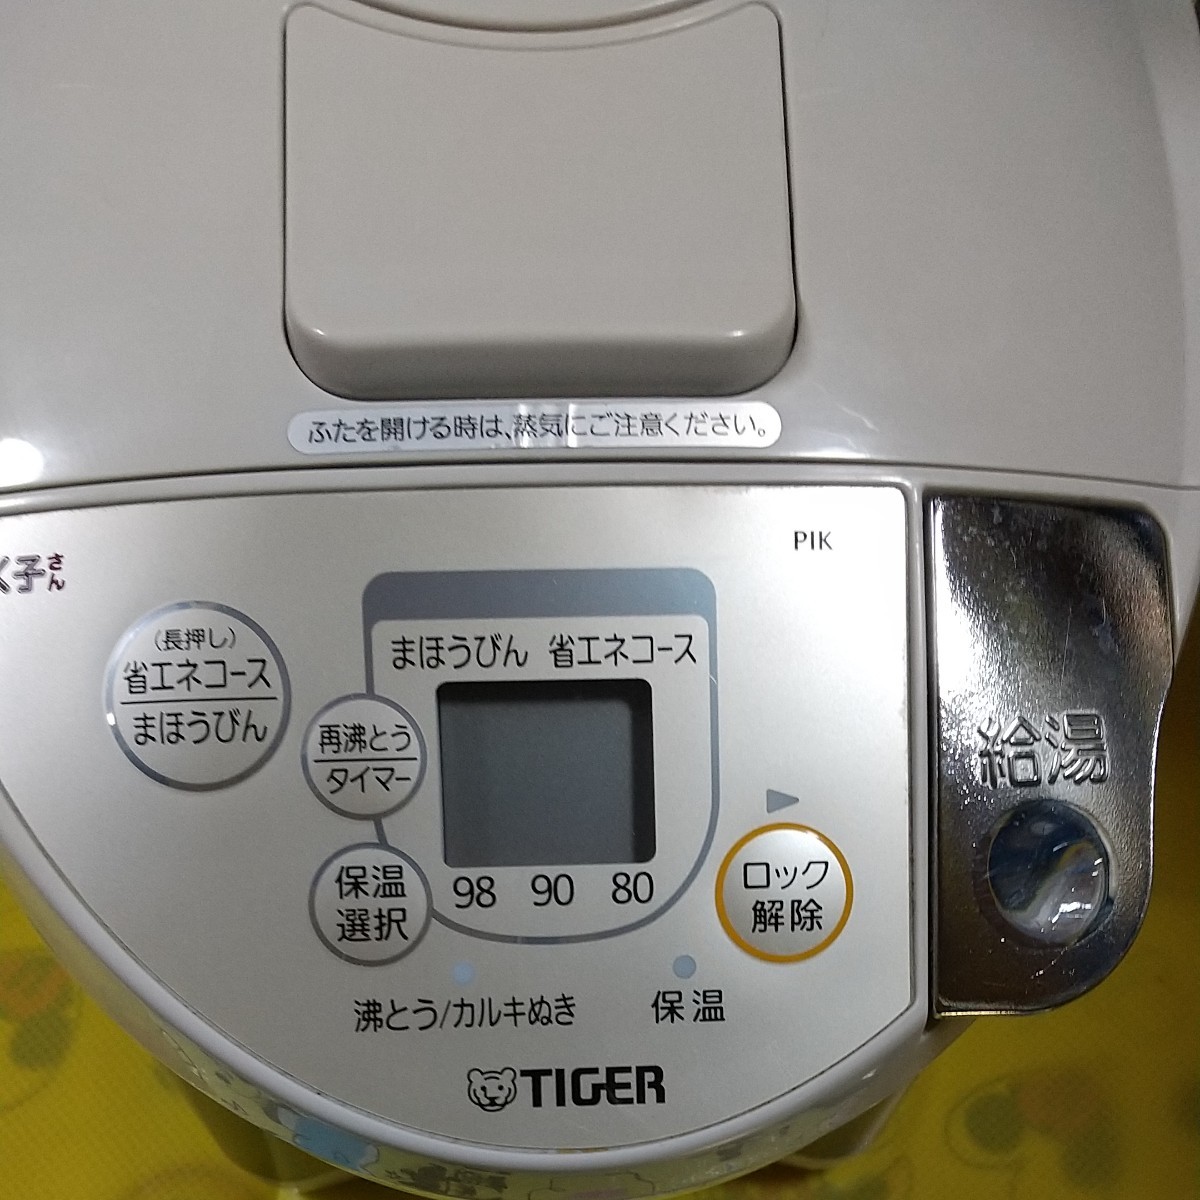 ★ TIGER タイガーVE電気まほうびんPIK―A220      とく子さん (2.2L)